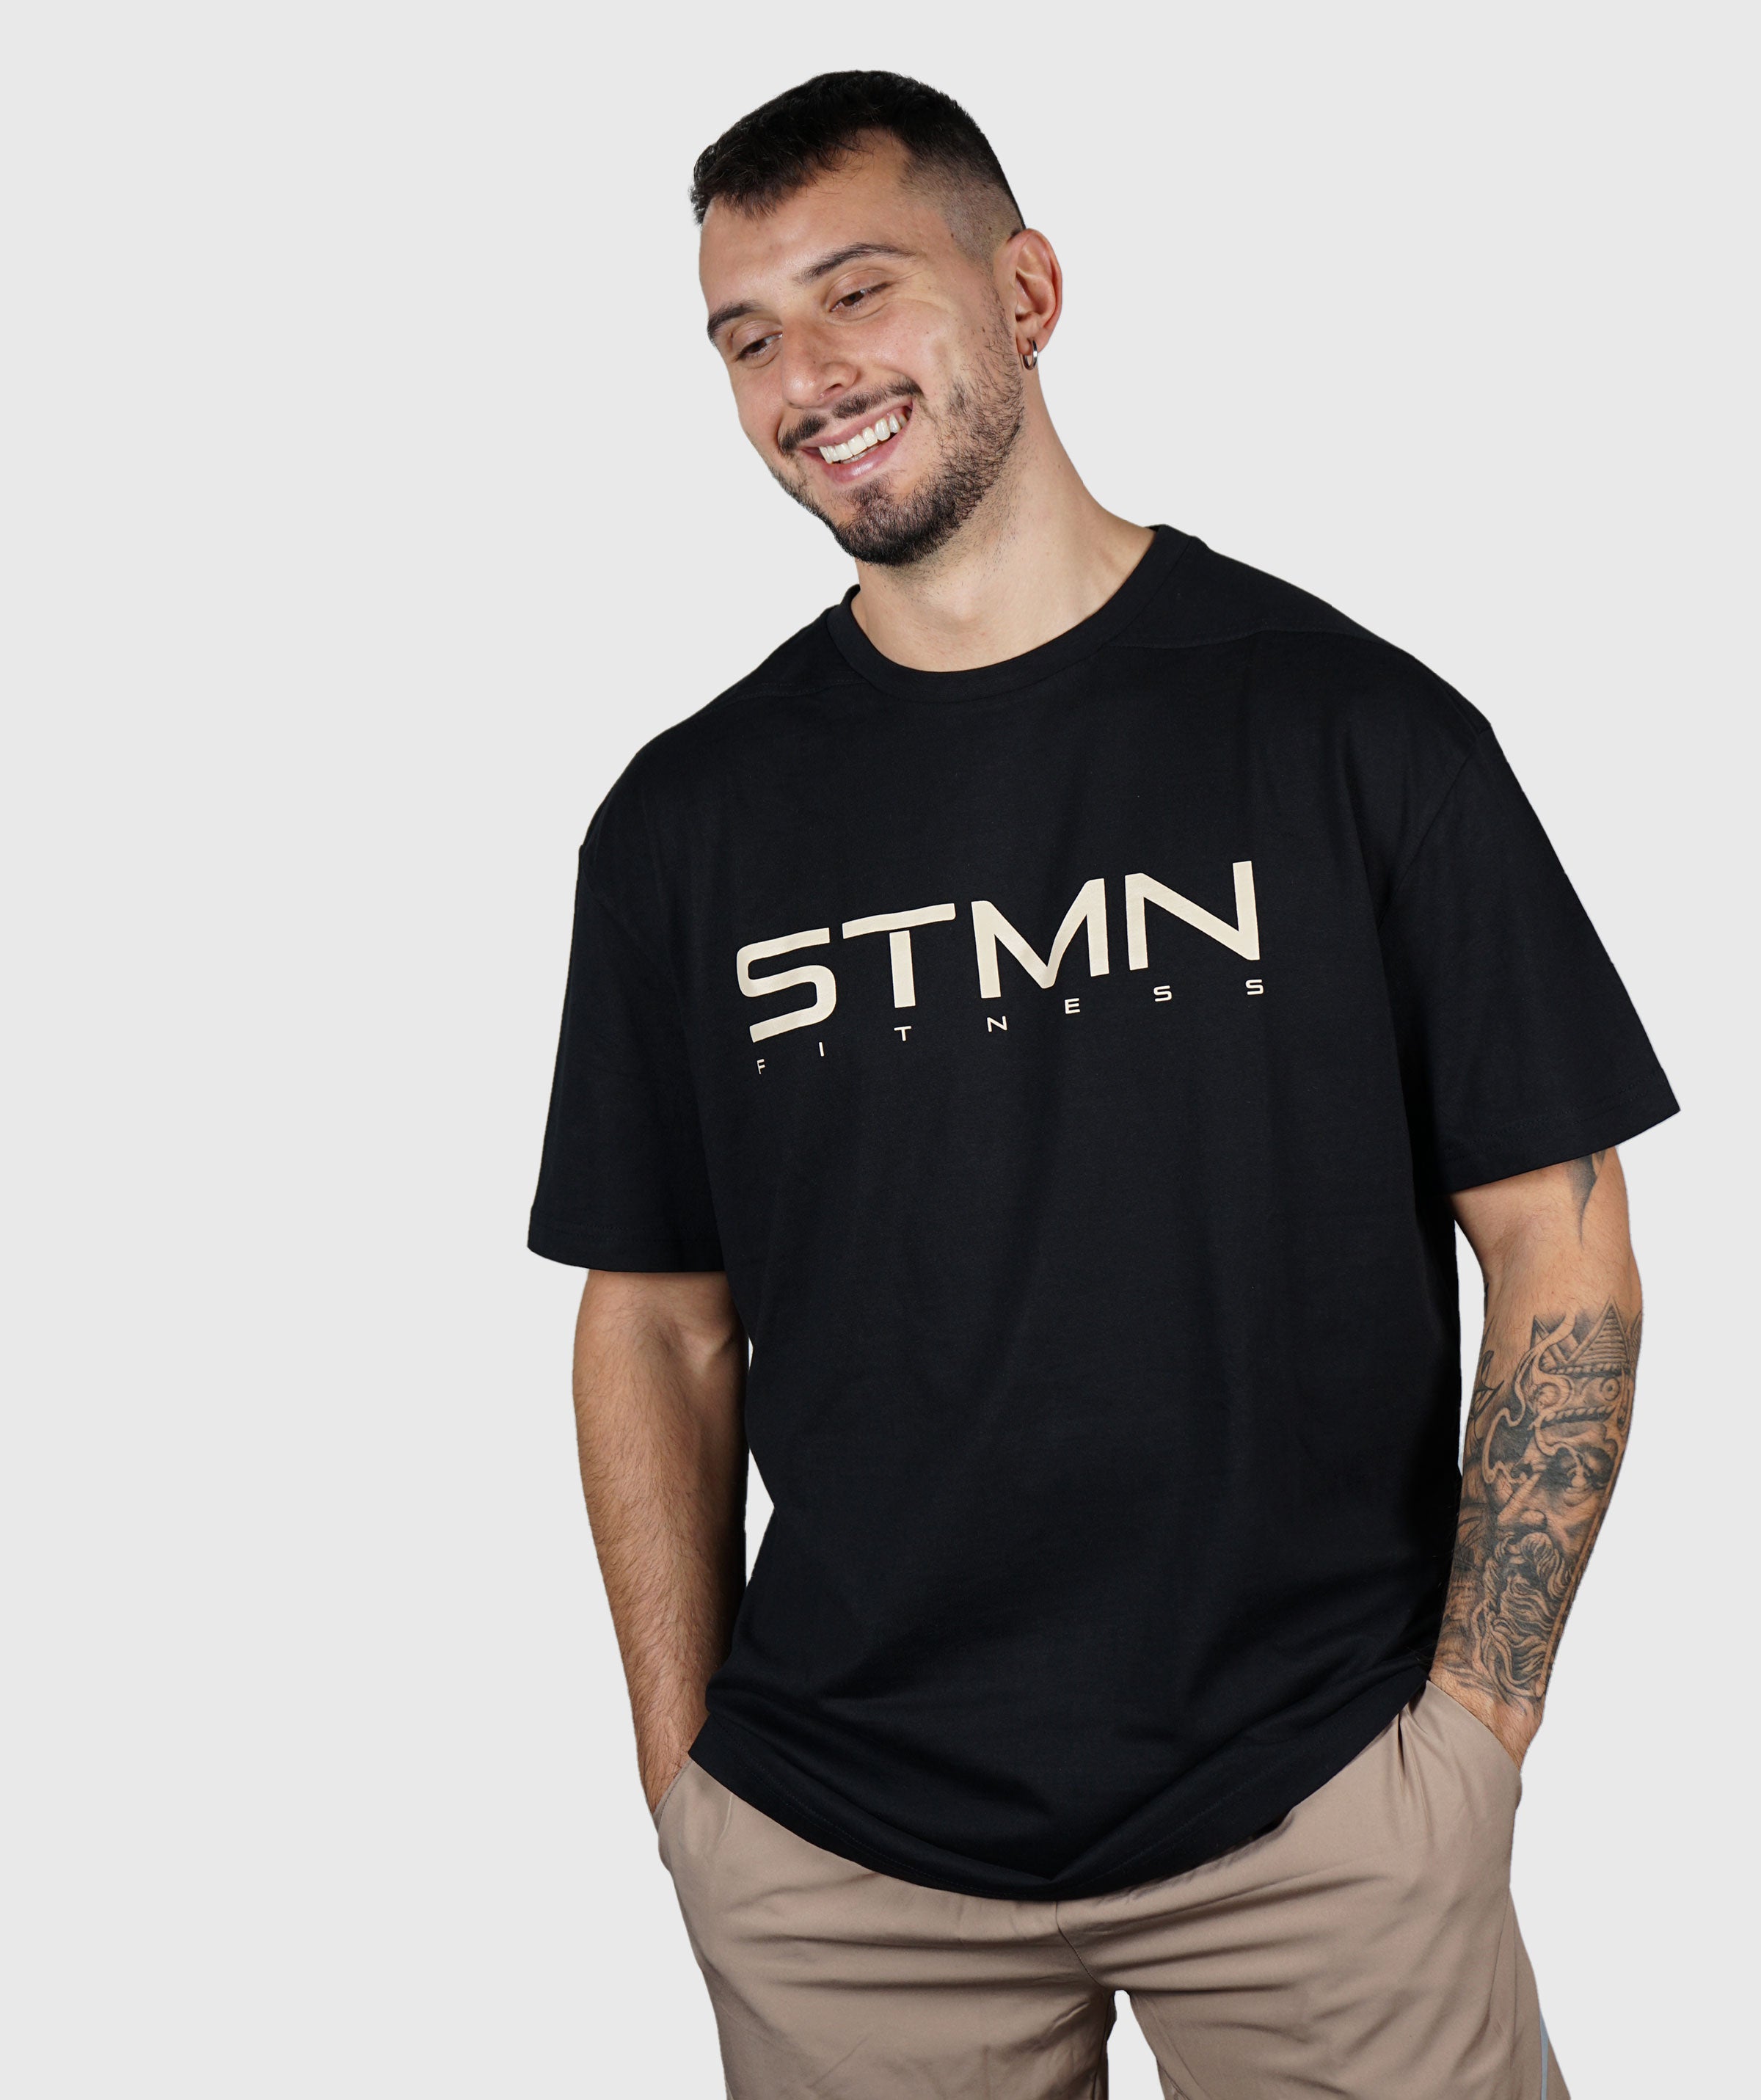 T-shirt STMN Loose-Fit Black/Gold - STMN Fitness